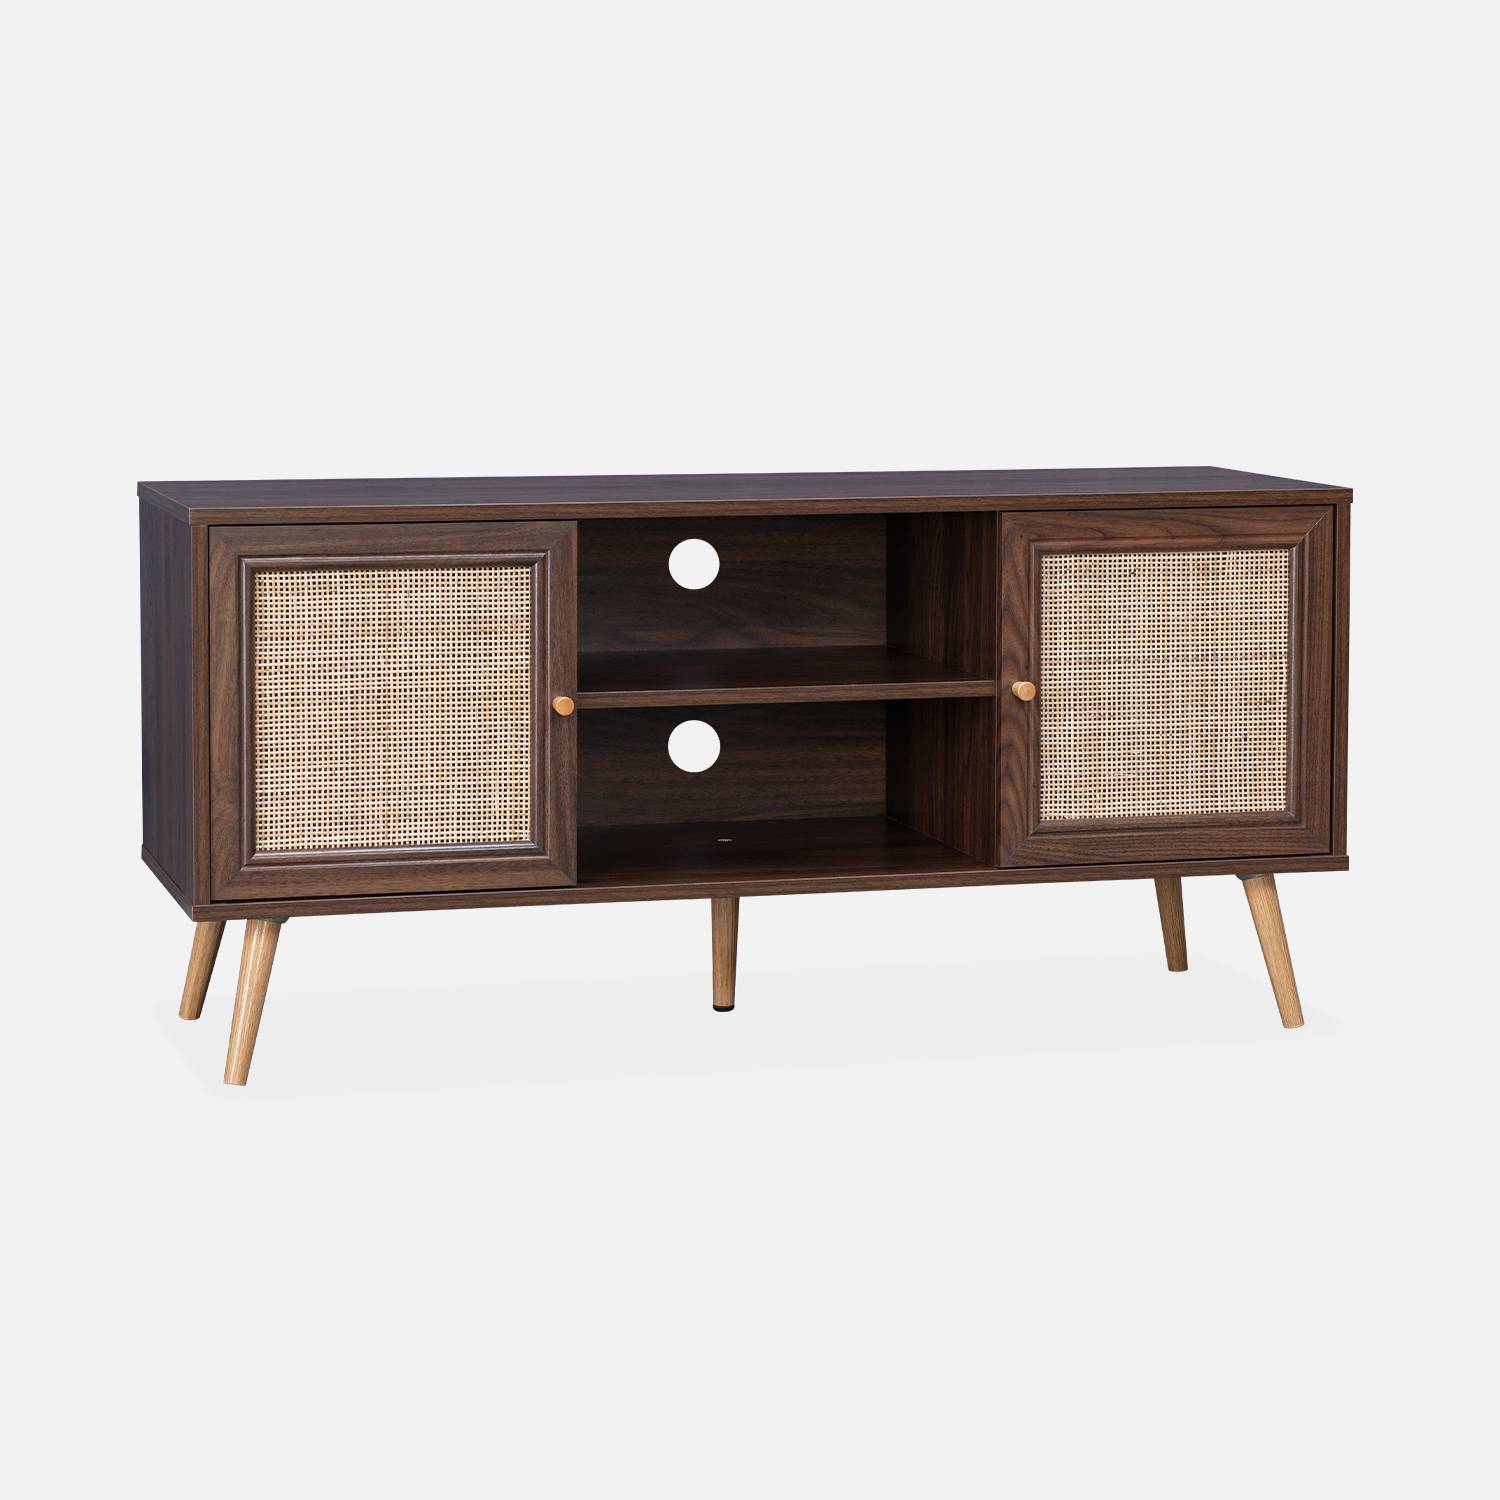 Scandi-style wood and cane rattan TV stand, 120x39x56.5cm, Dark wood | sweeek